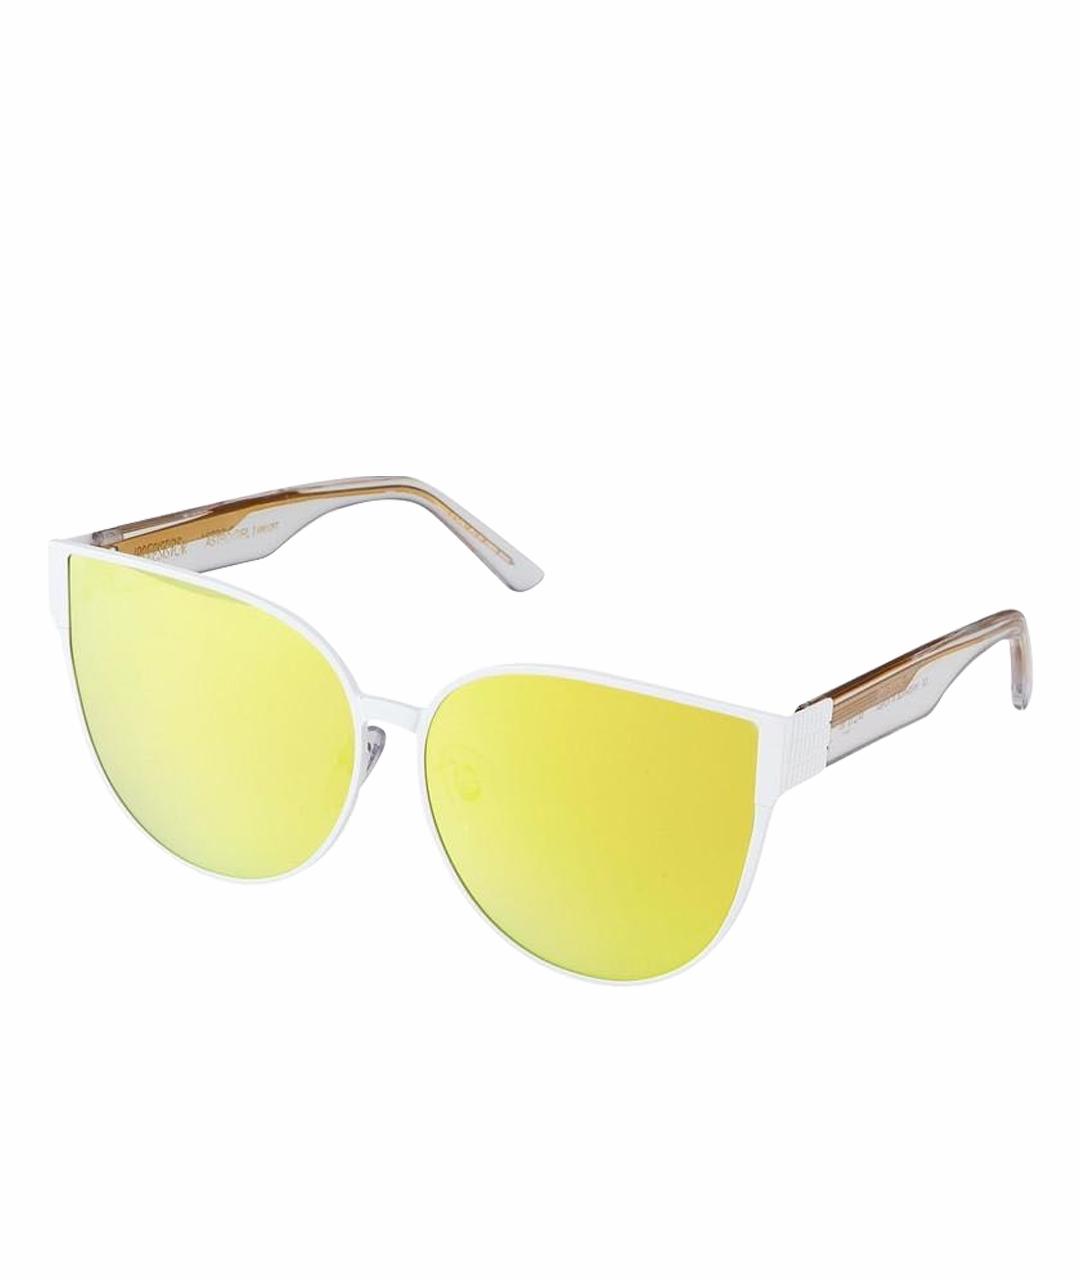 IRRESISTOR Желтые металлические солнцезащитные очки, фото 1